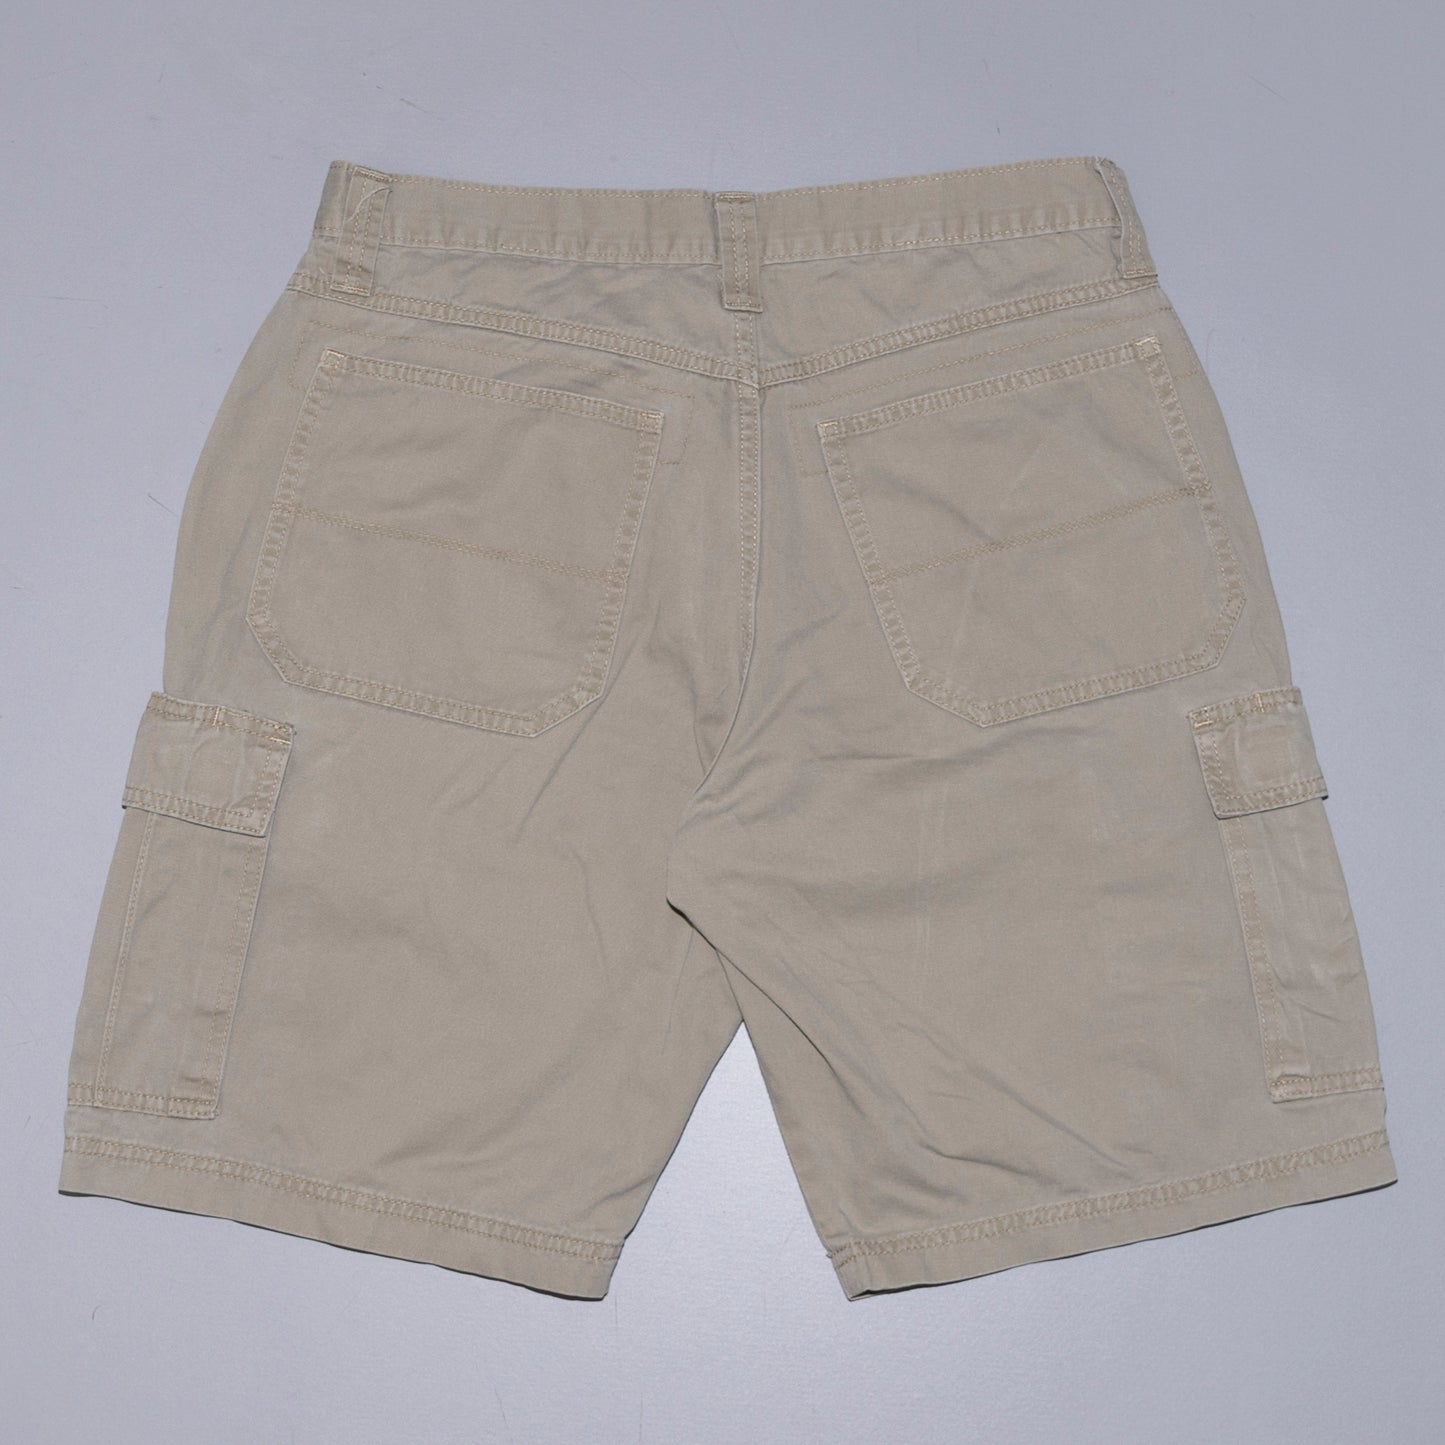 Wrangler Cargo Shorts, W33